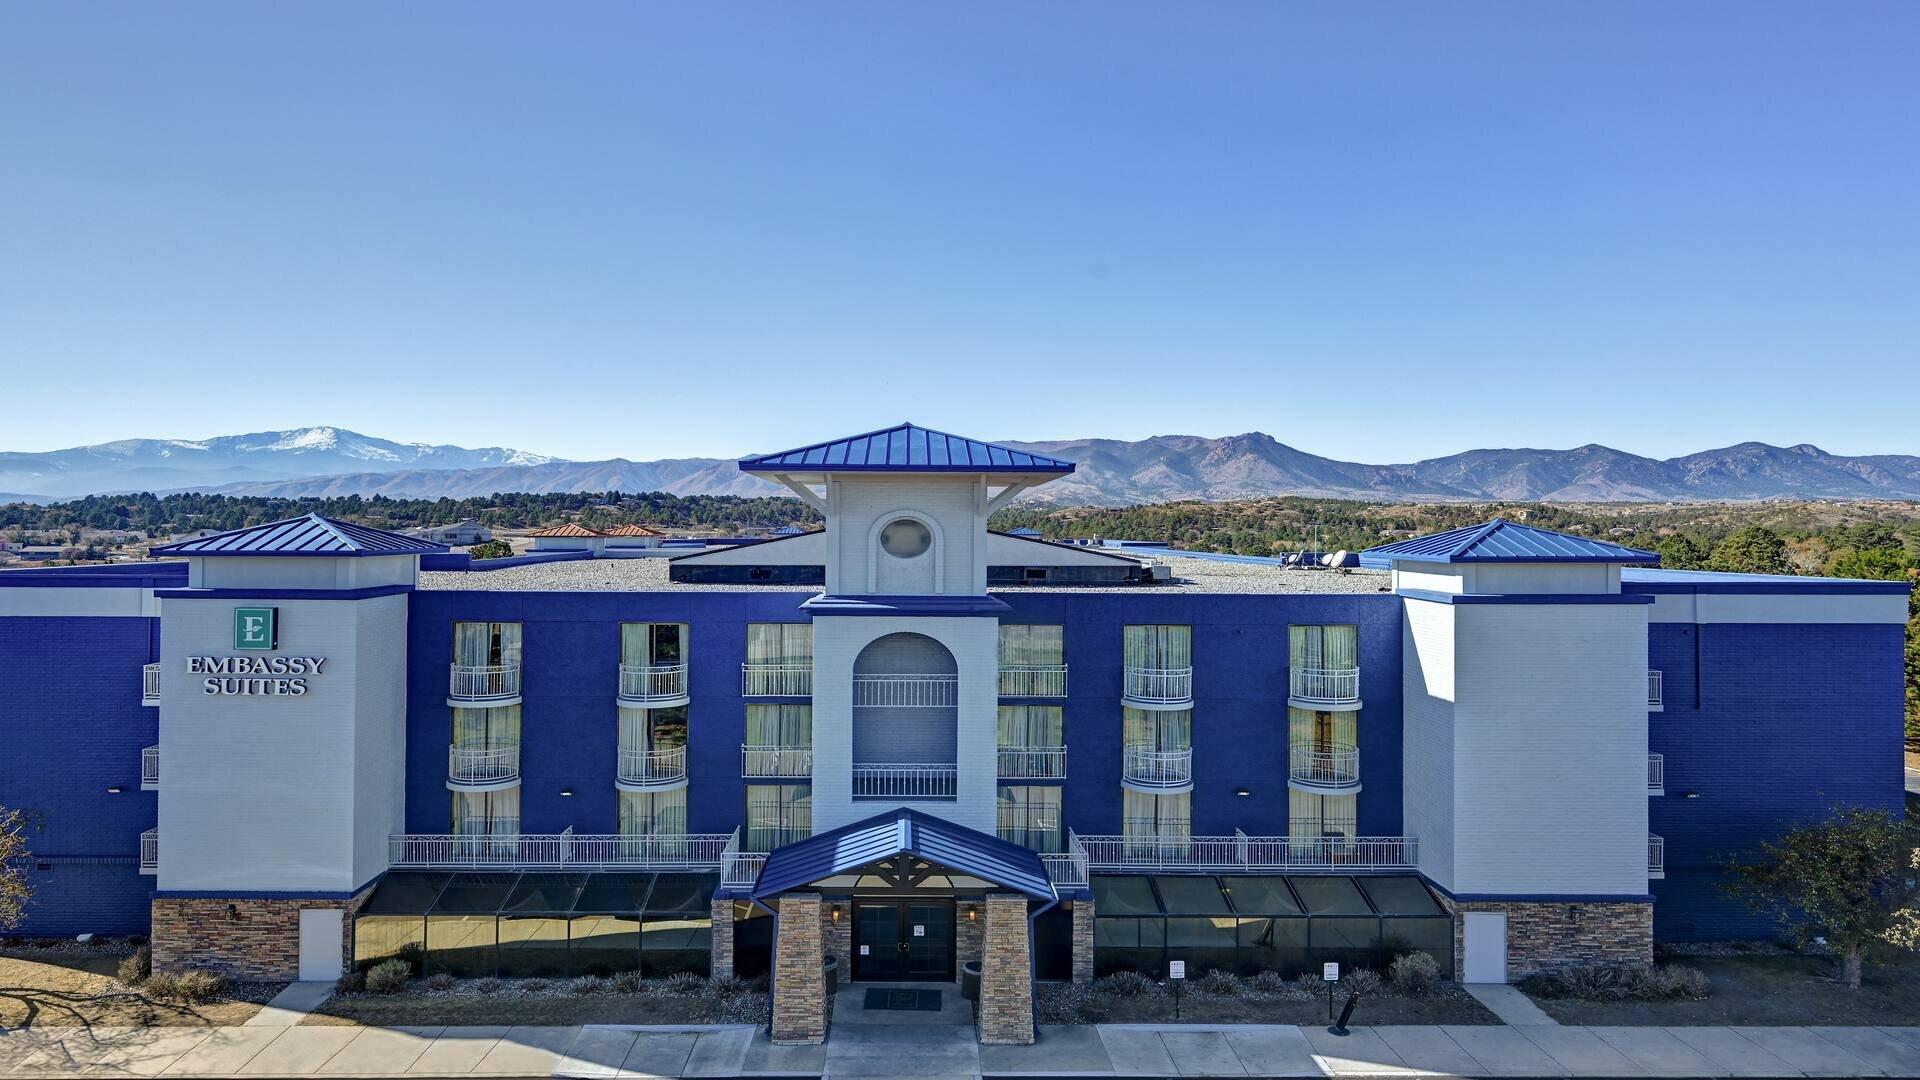 Photo of Embassy Suites by Hilton Colorado Springs, Colorado Springs, CO